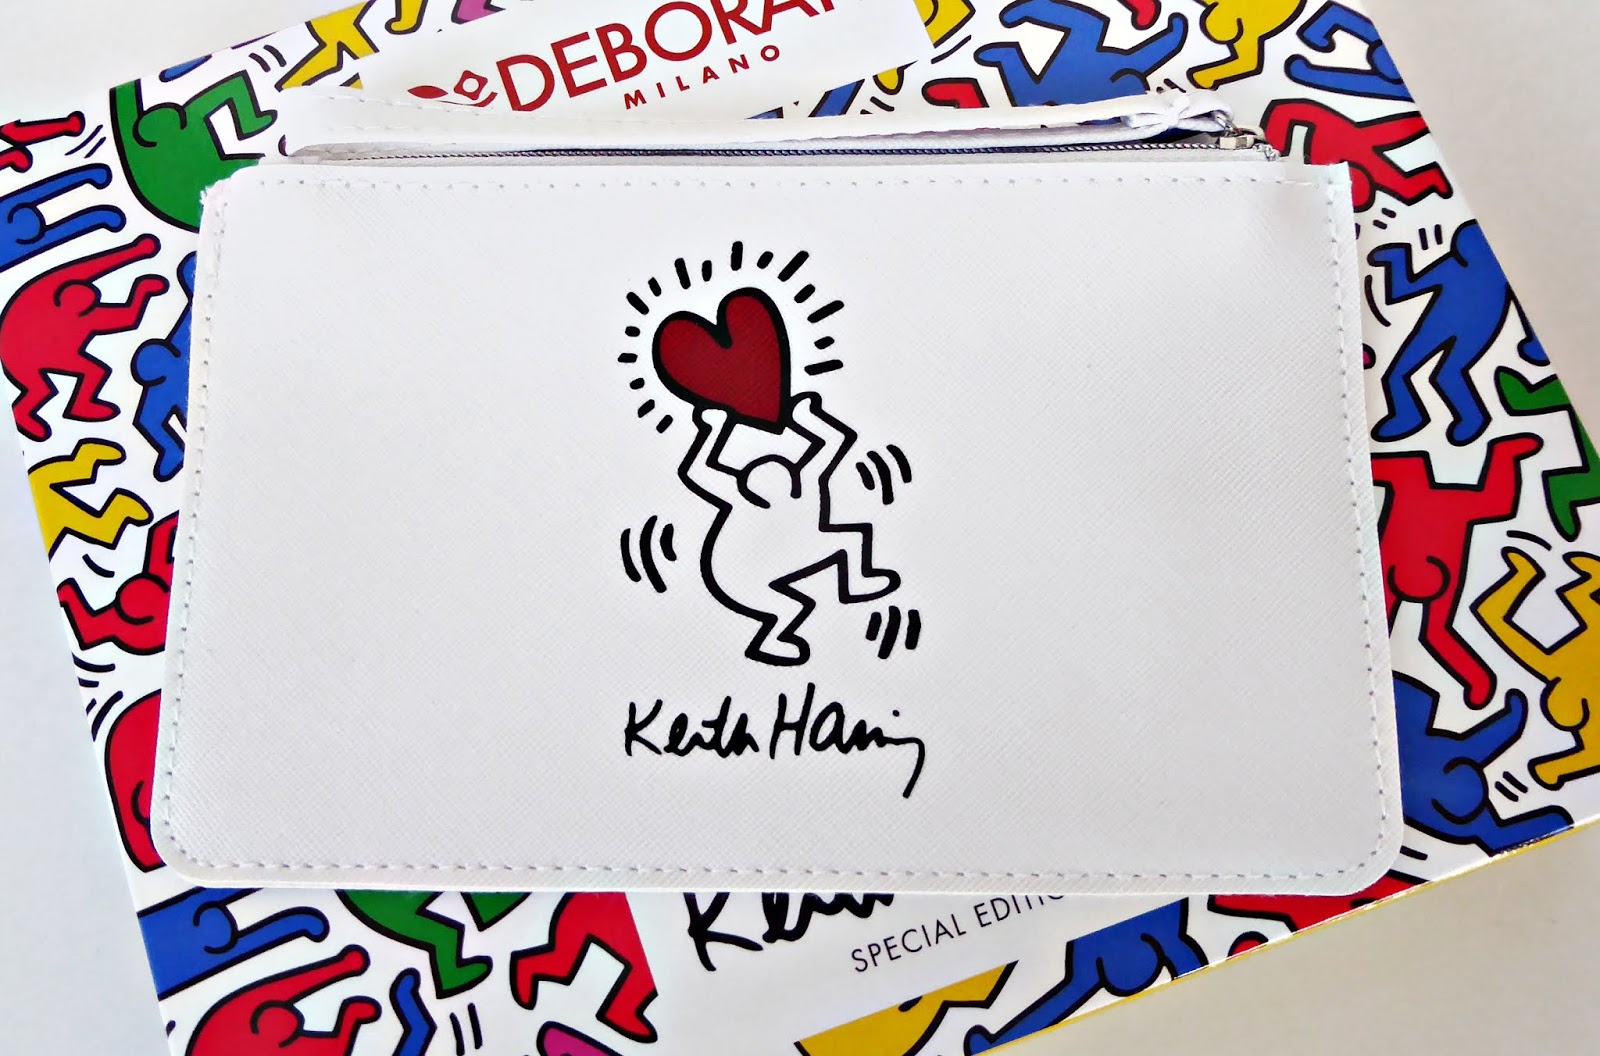 Maquillaje de verano: edición limitada Keith Haring de Deborah Milano